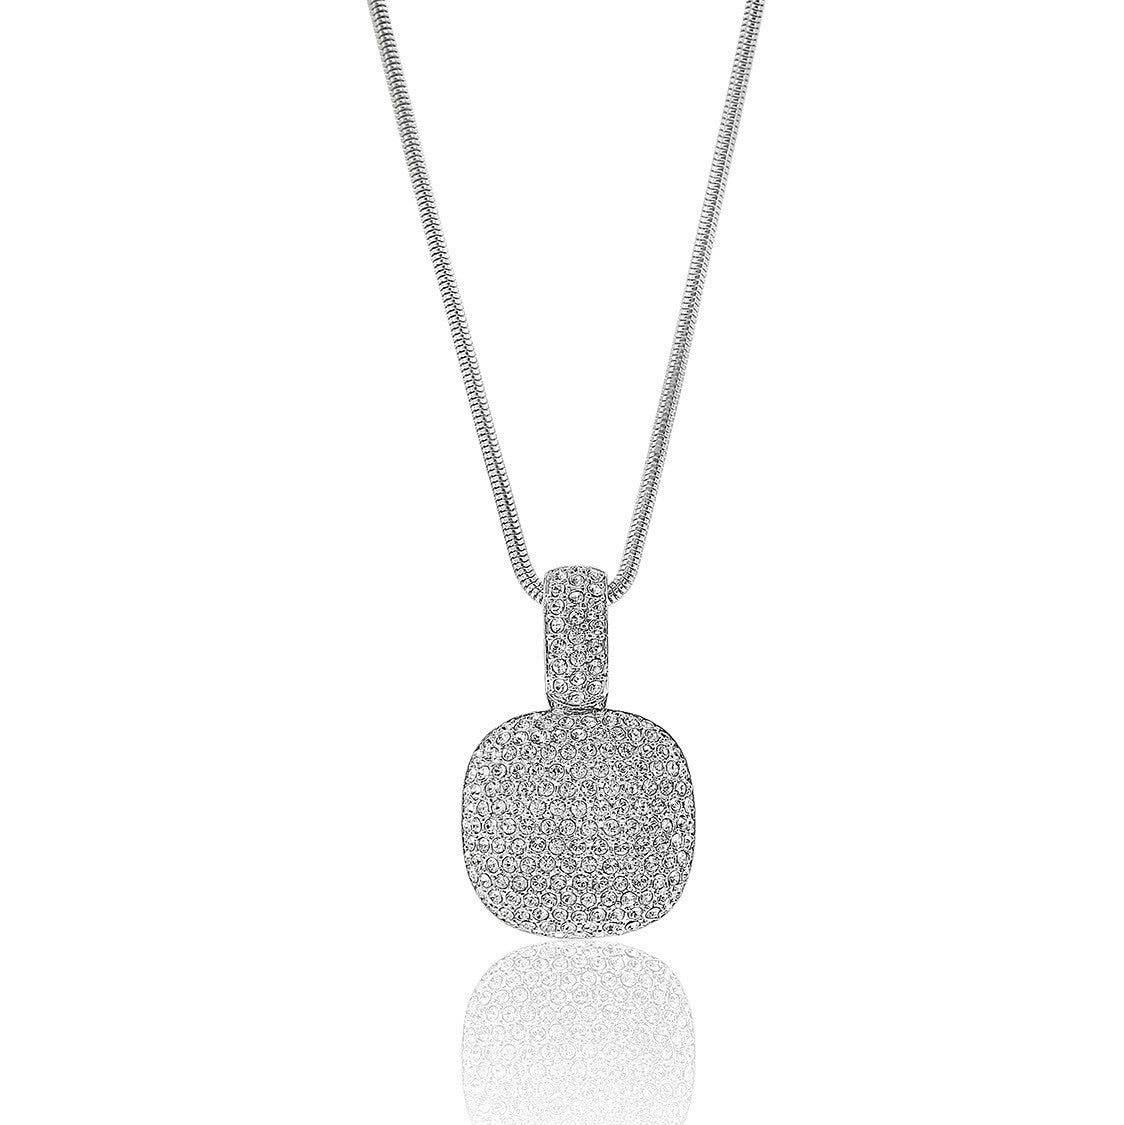 Silver Pave Swarovski Crystal Pendant Necklace